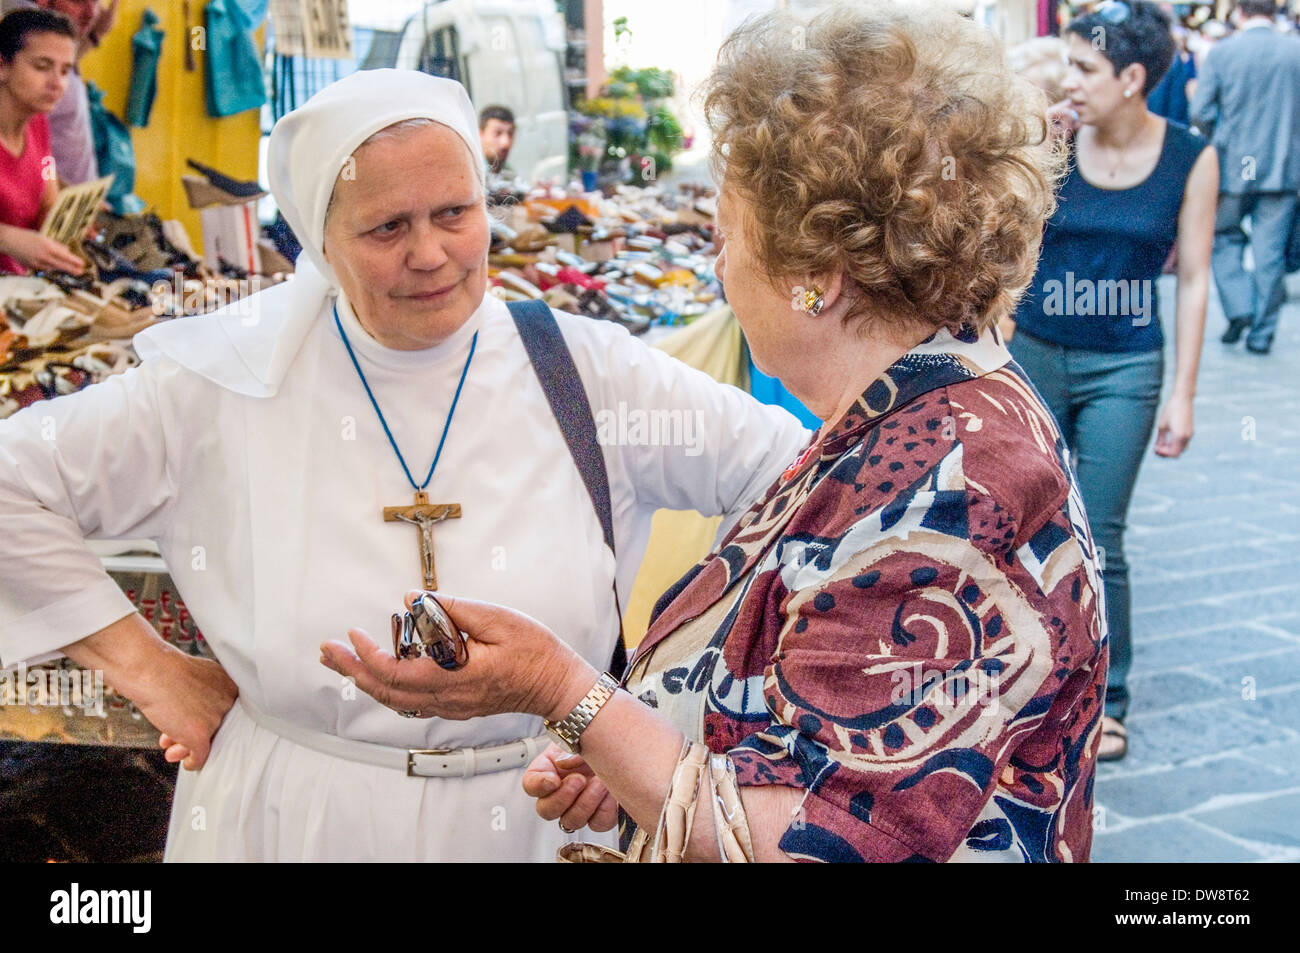 Eine Nonne tief im Gespräch mit einer anderen Frau neben einem Straßenmarkt, Camogli, Riviera di Levante, Italien Stockfoto